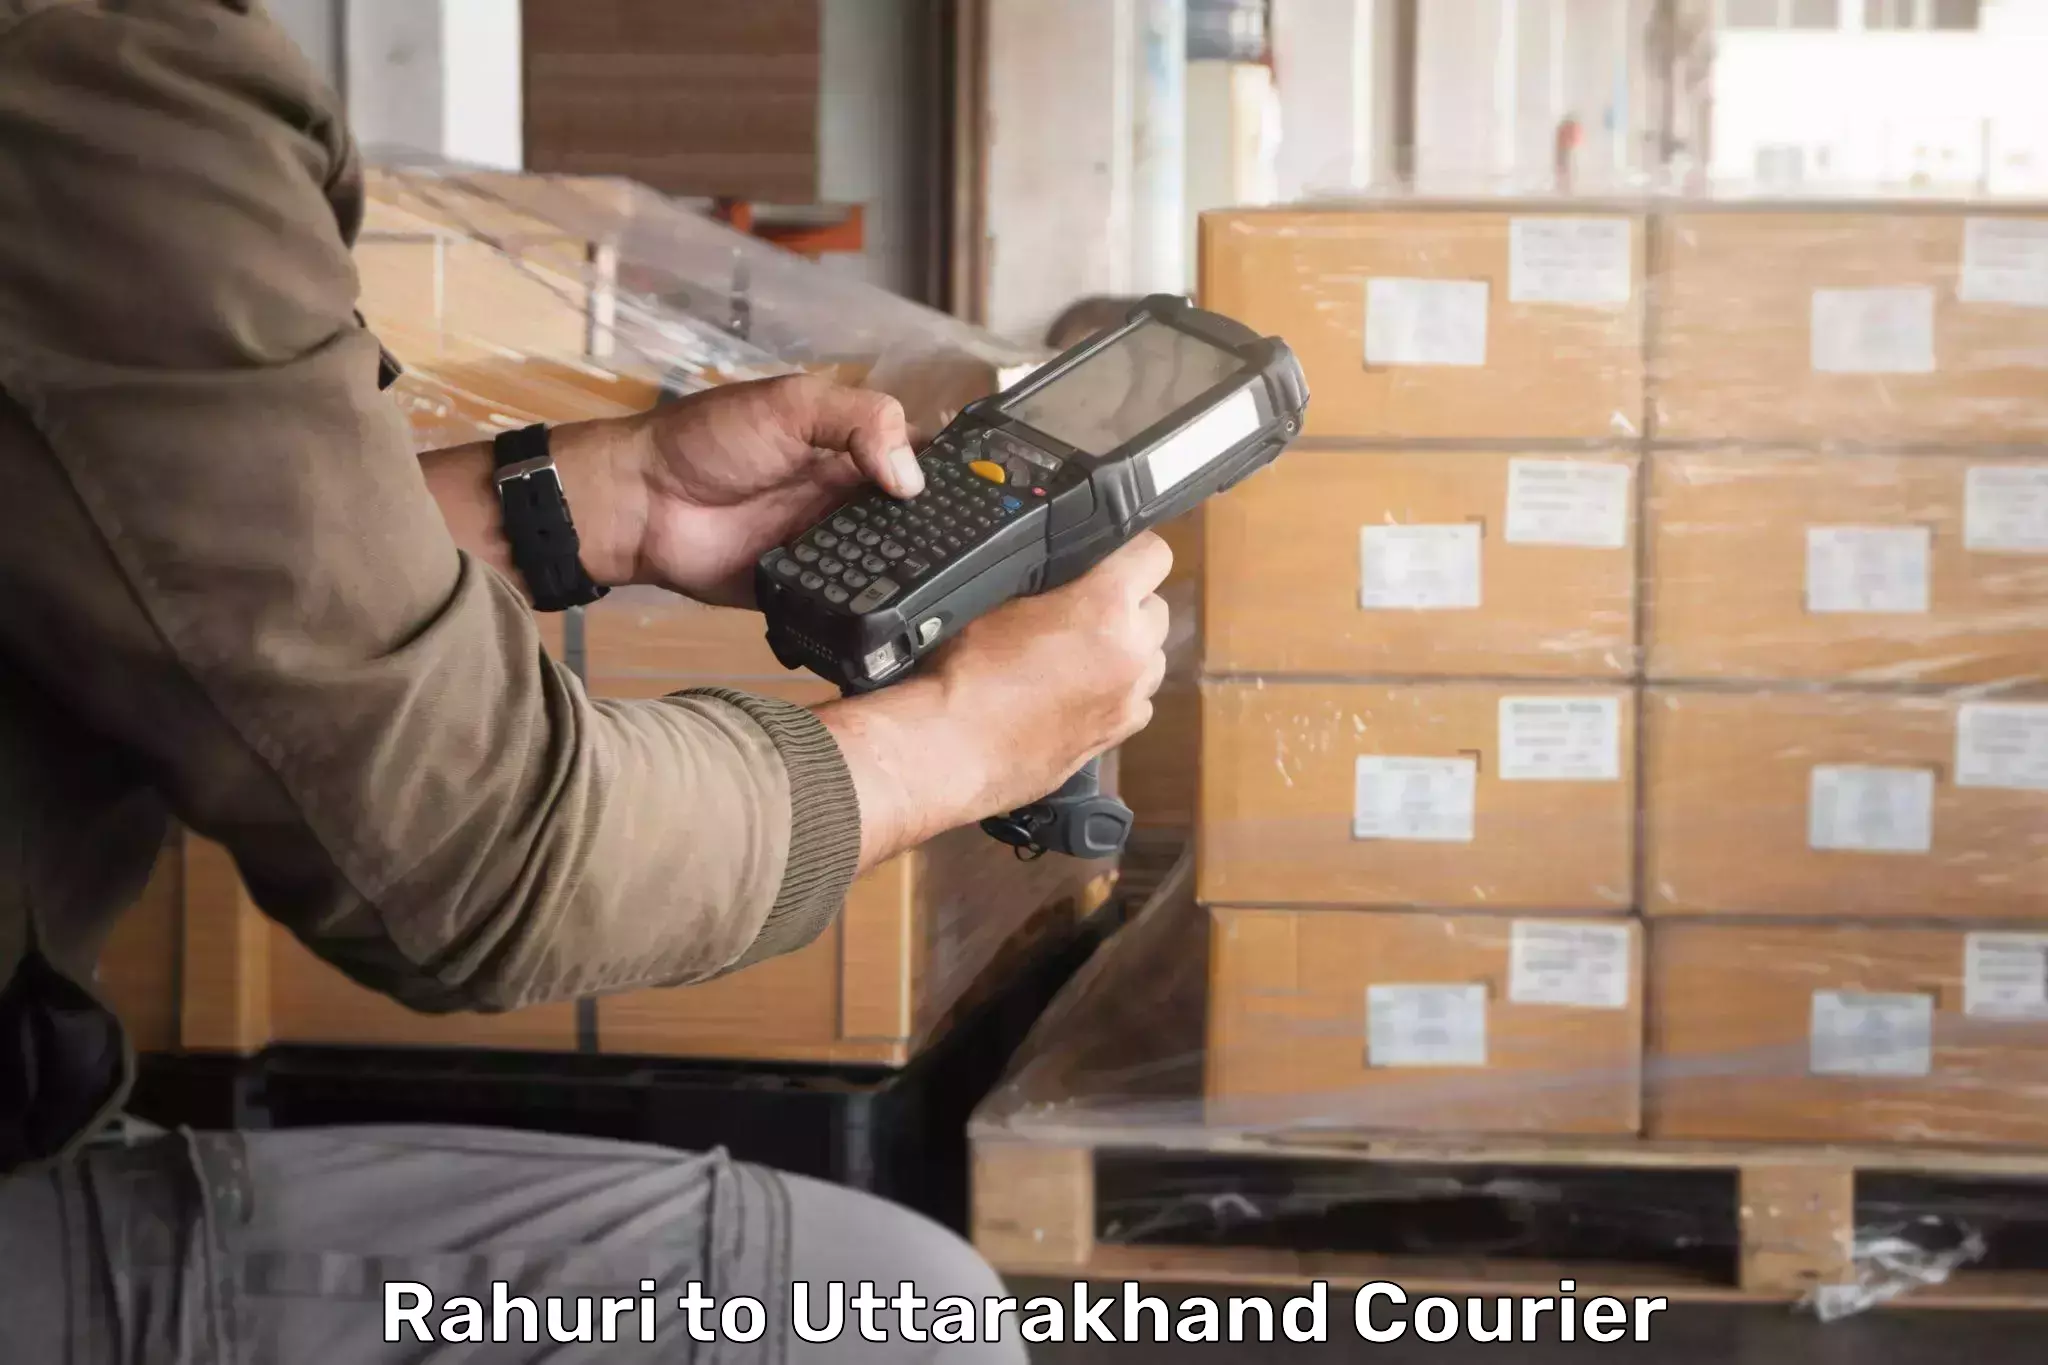 Holiday shipping services Rahuri to Uttarakhand